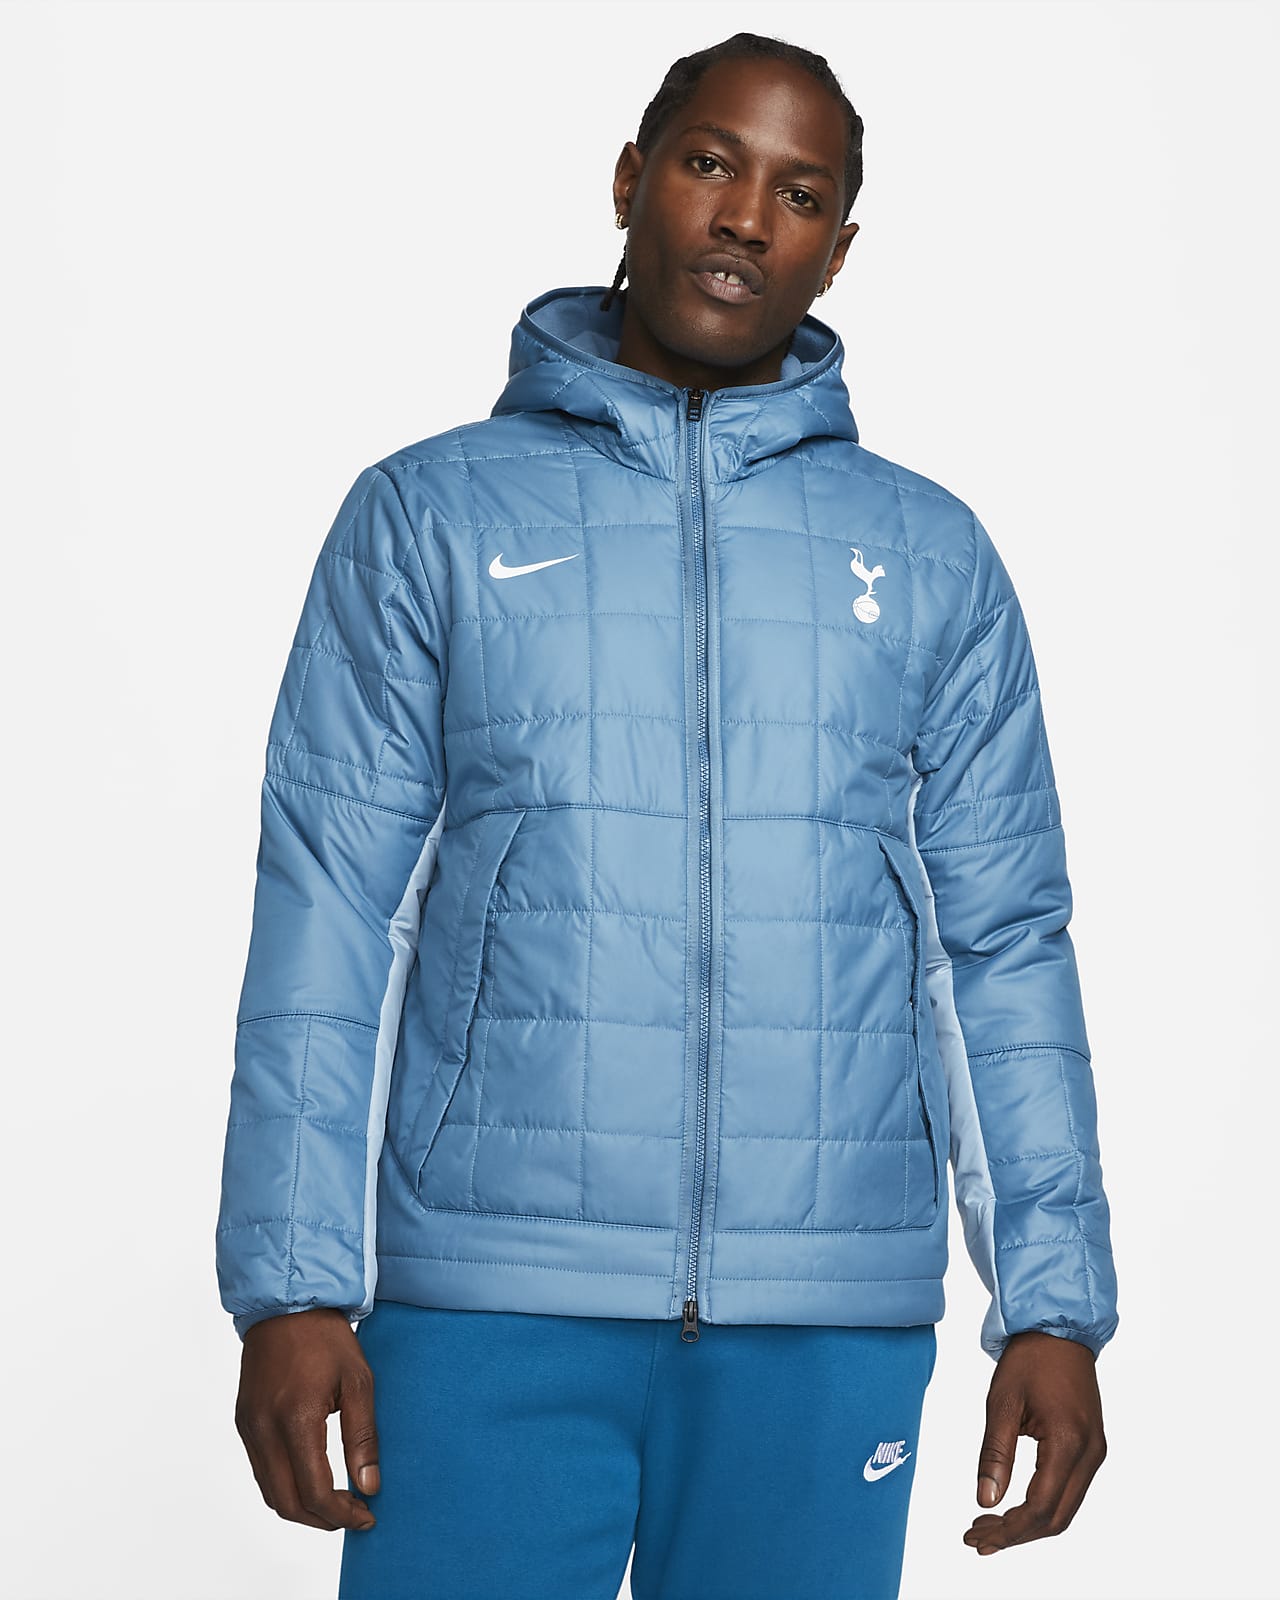 Fleeceforet Tottenham Hotspur Nike-jakke med hætte til Nike DK